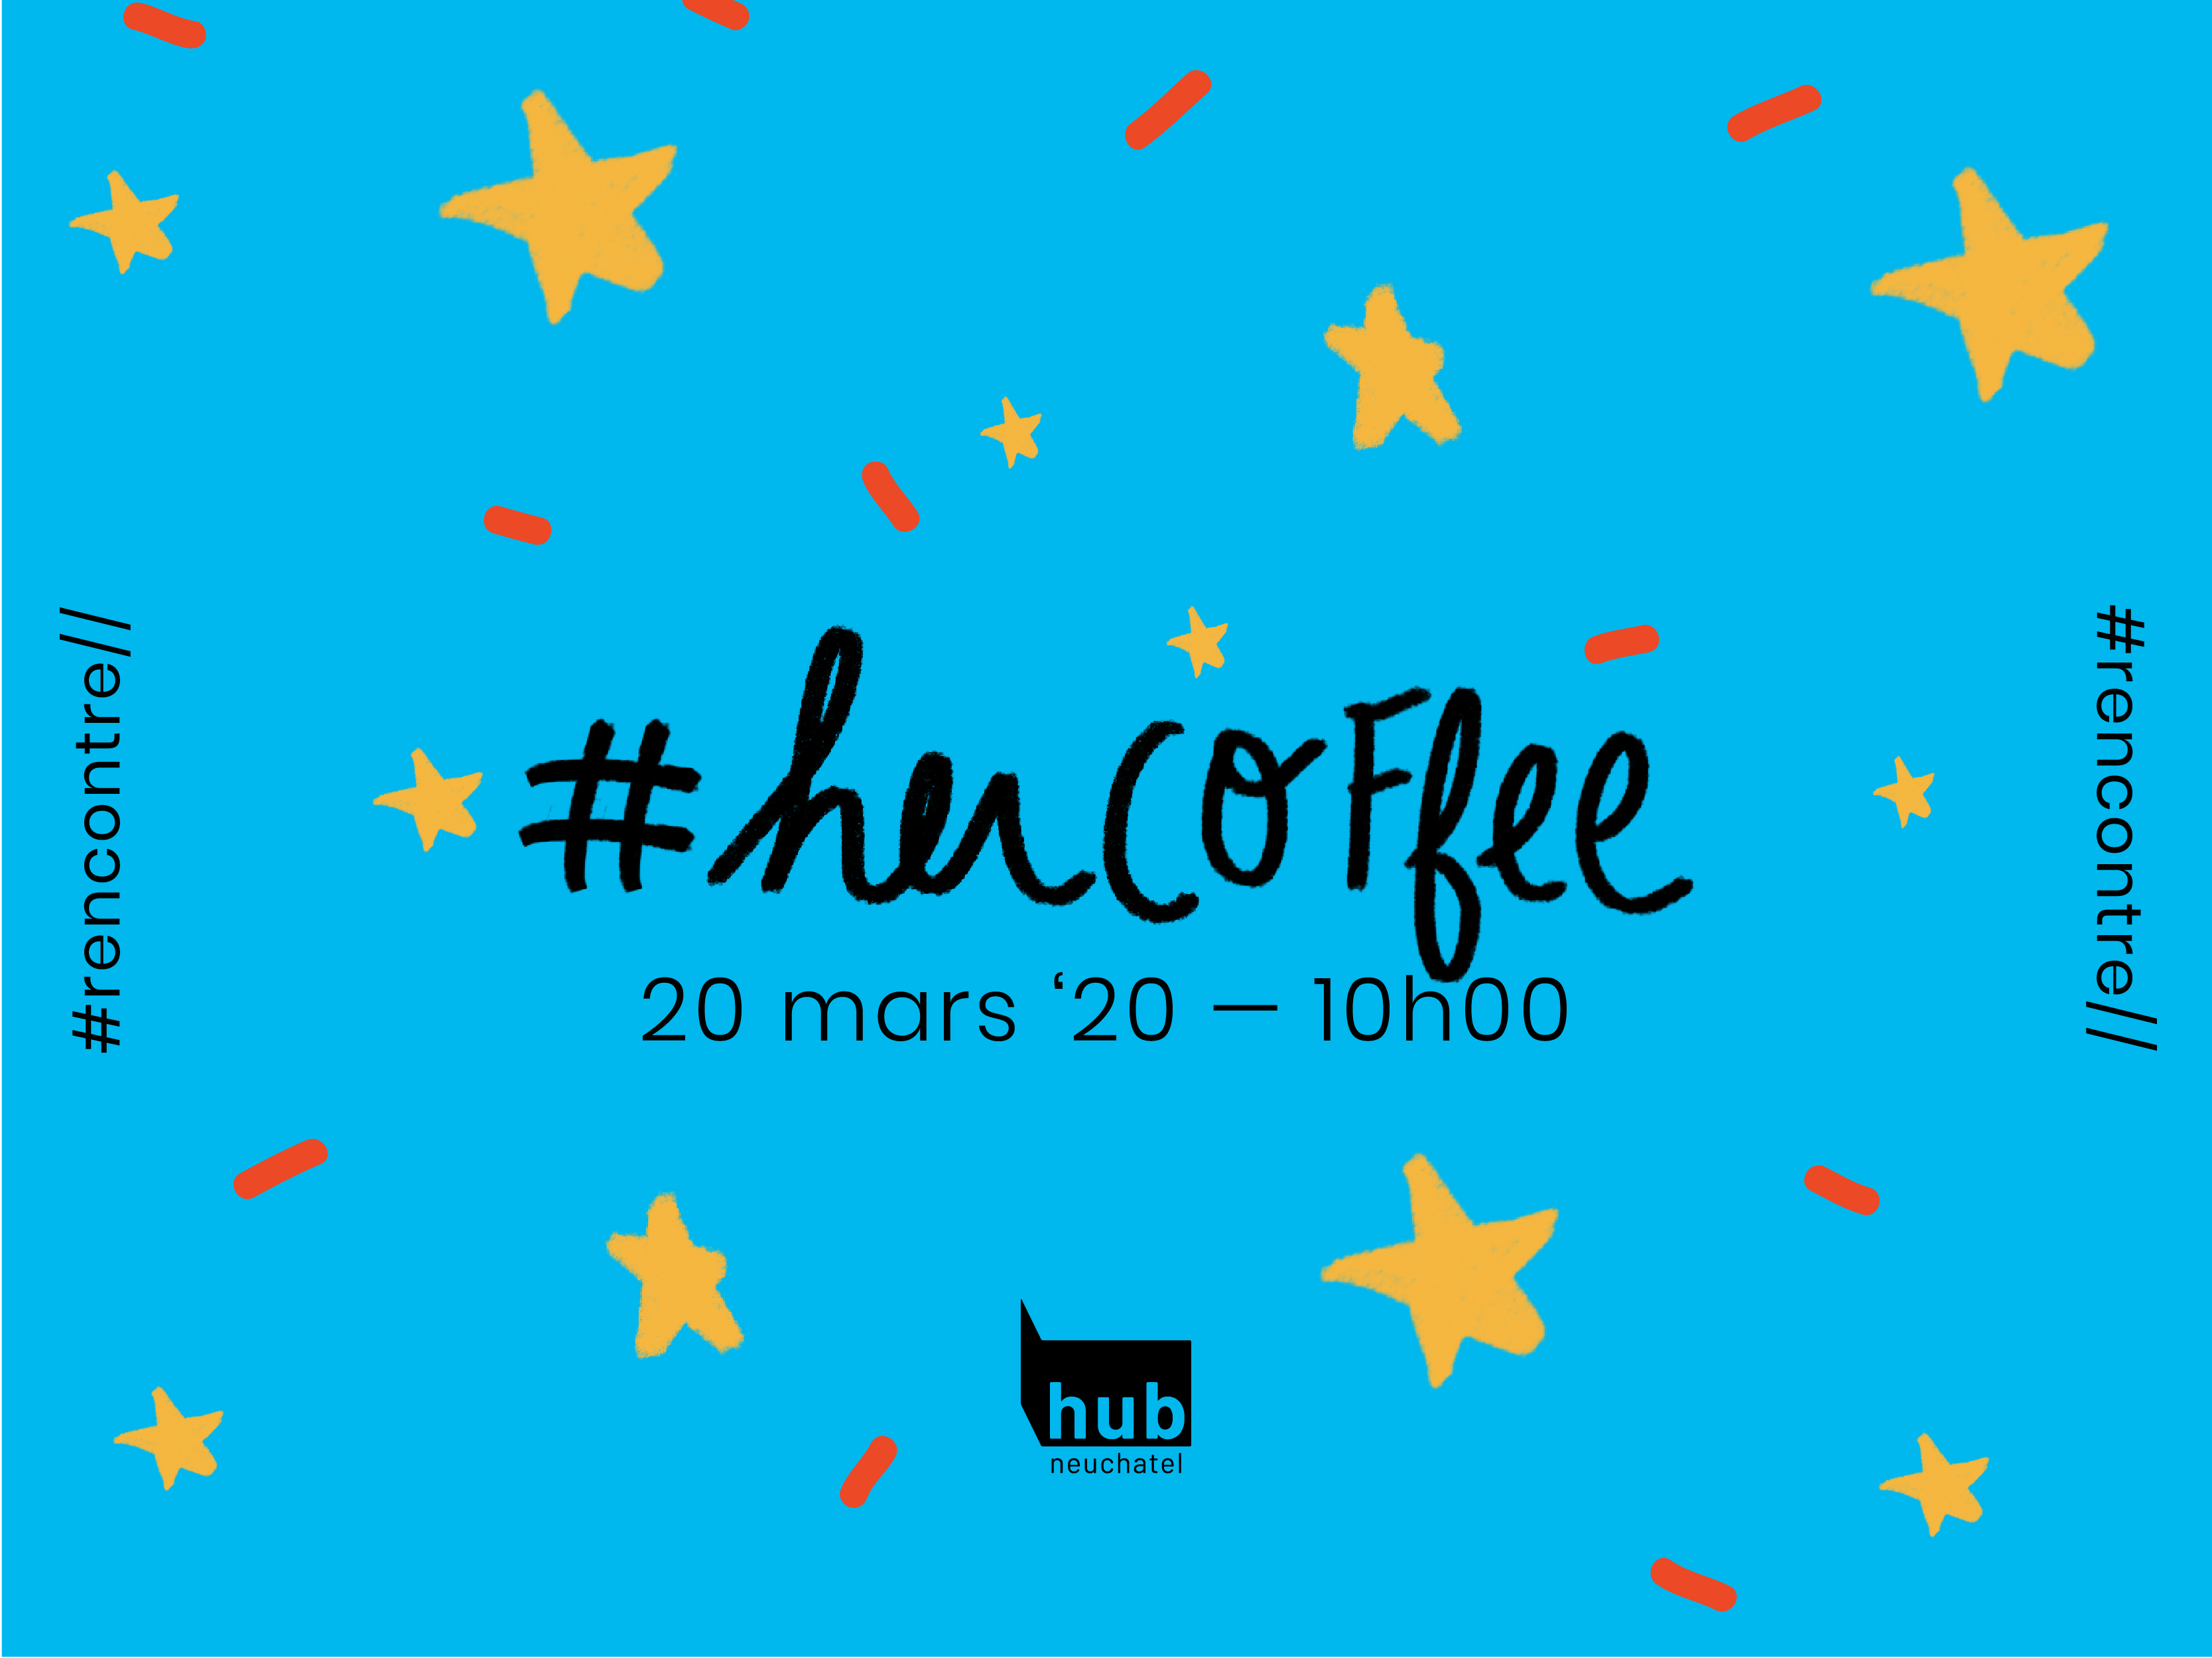 Her Coffee: Women's Coffee Online Meetup Neuchâtel